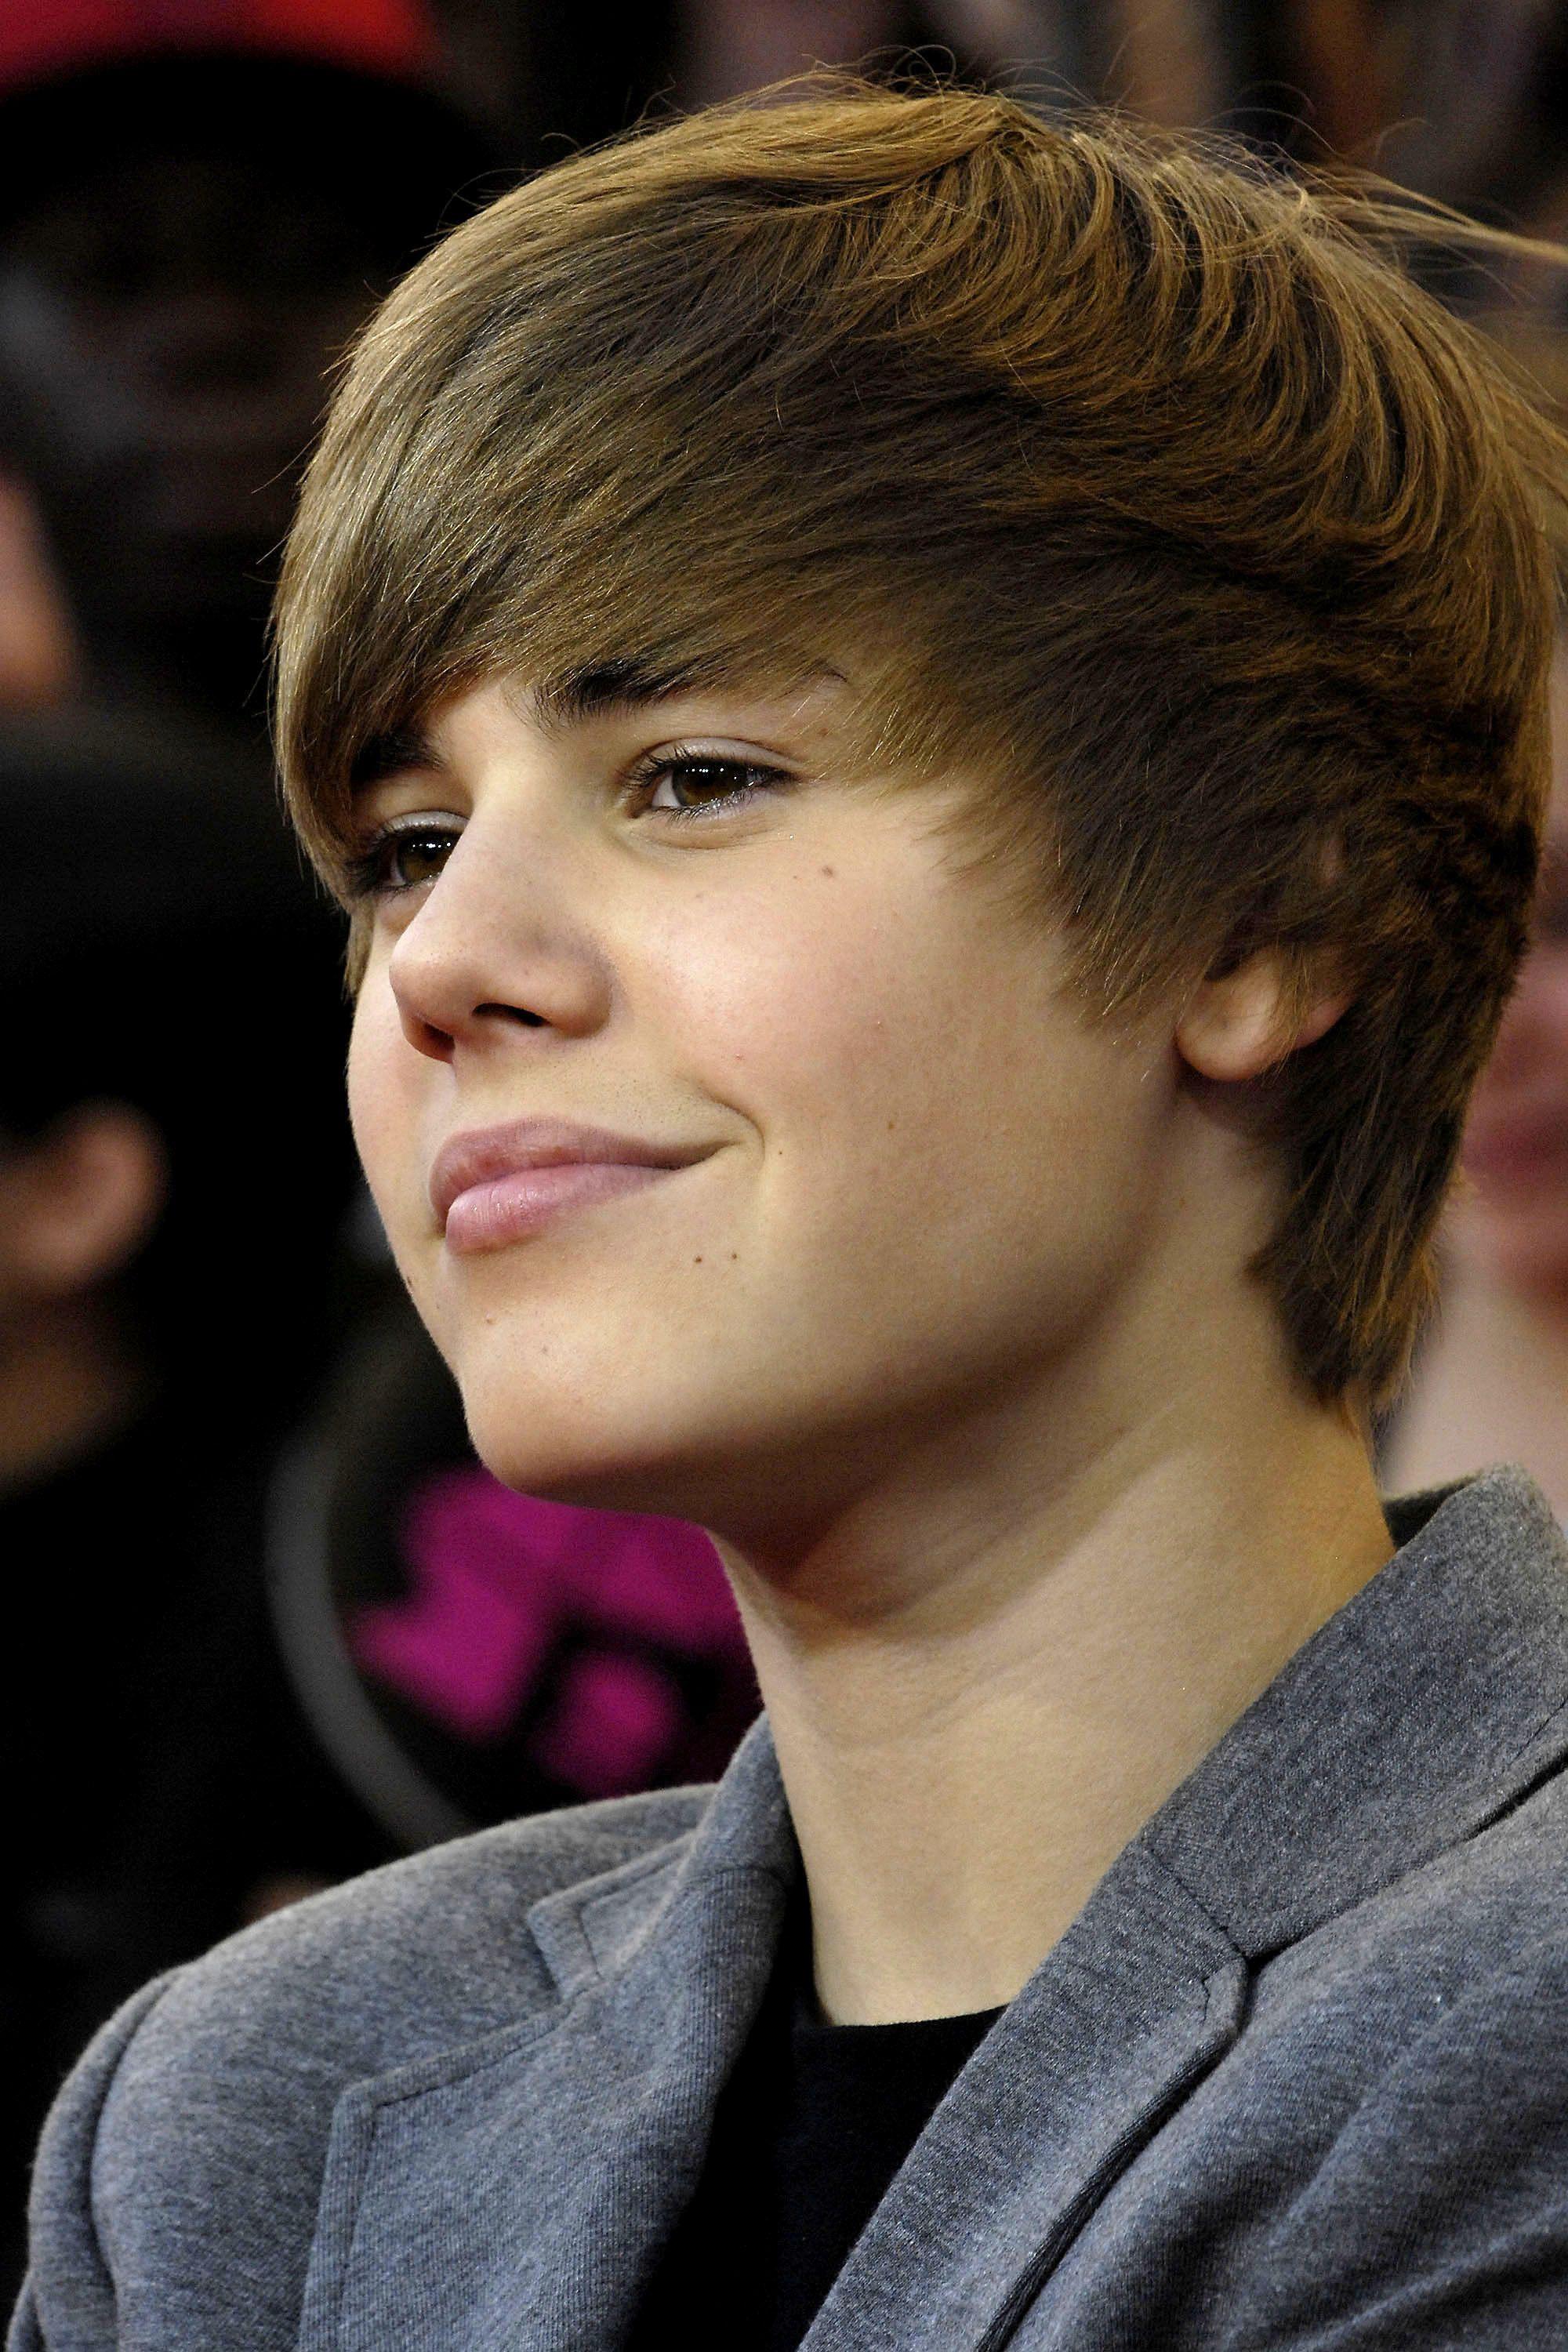 Image result for justin bieber smile 2011. Justin Bieber